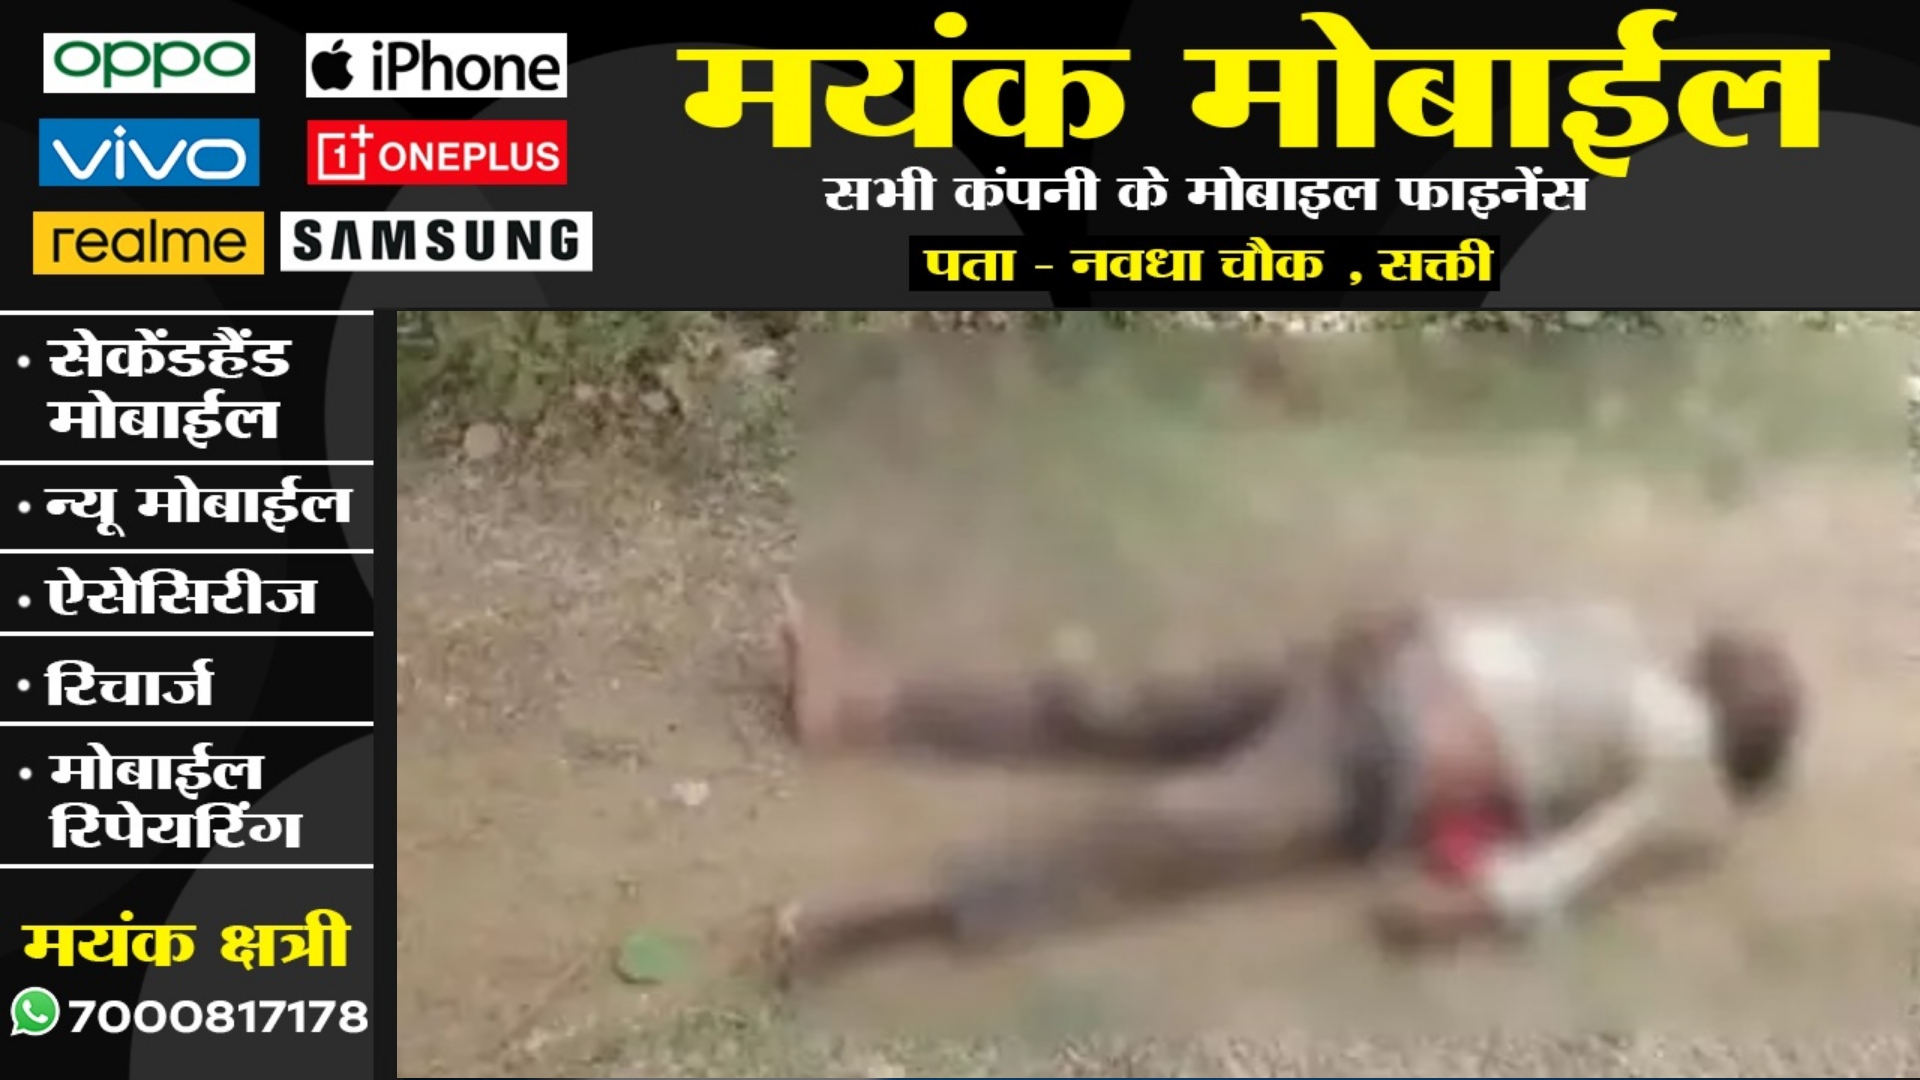 जांजगीर चाम्पा - मुन्ना सिंह की संदेहास्पद हालत में लाश मिलने से मची सनसनी , पुलिस पूछताछ में जुटी